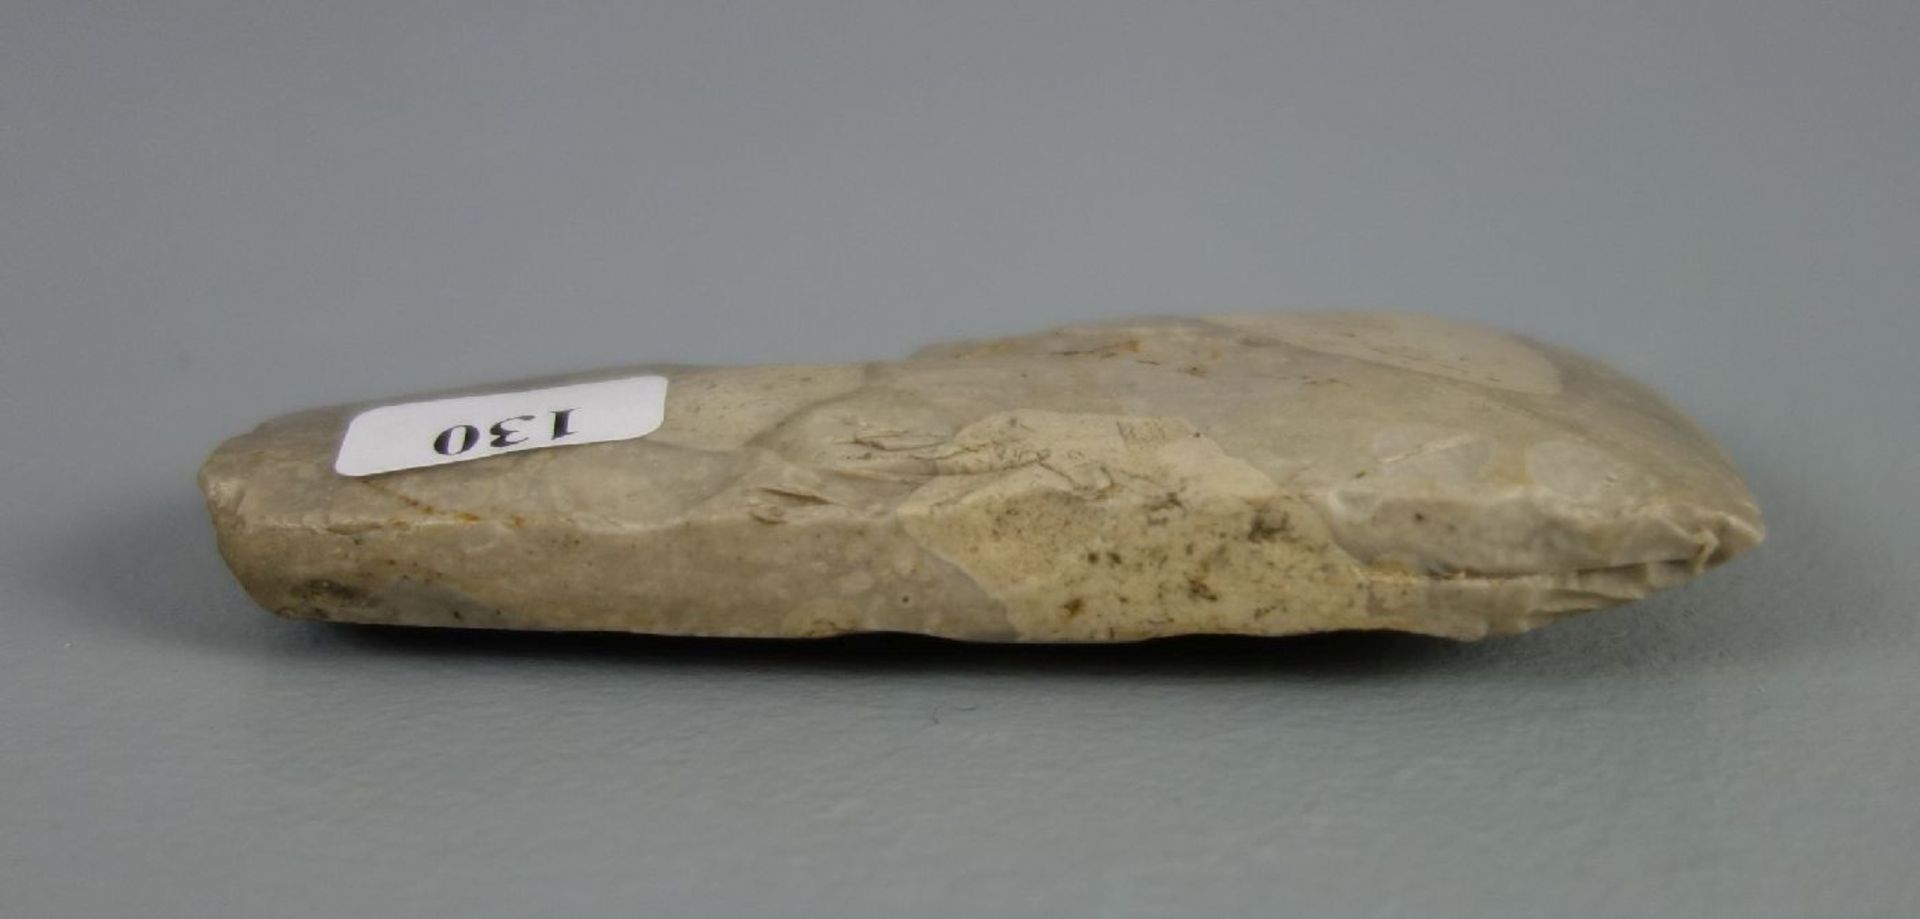 STEINBEIL / STEINAXT, prähistorisches Werkzeug aus hellgrauem Feuerstein. Trapezförmige Form mit - Bild 3 aus 4